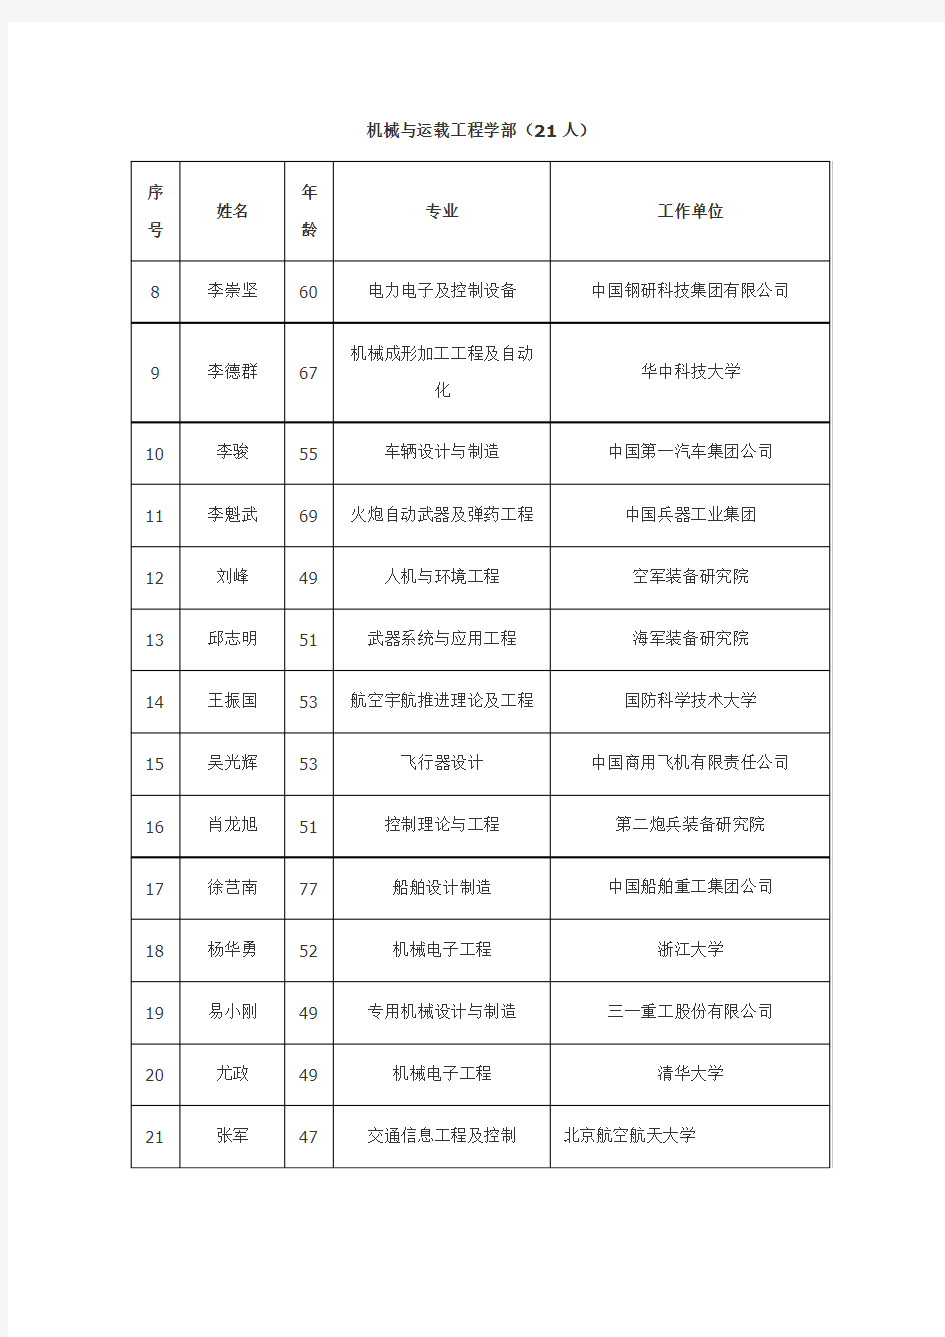 2013年中国工程院院士增选进入第二轮评审的候选人名单